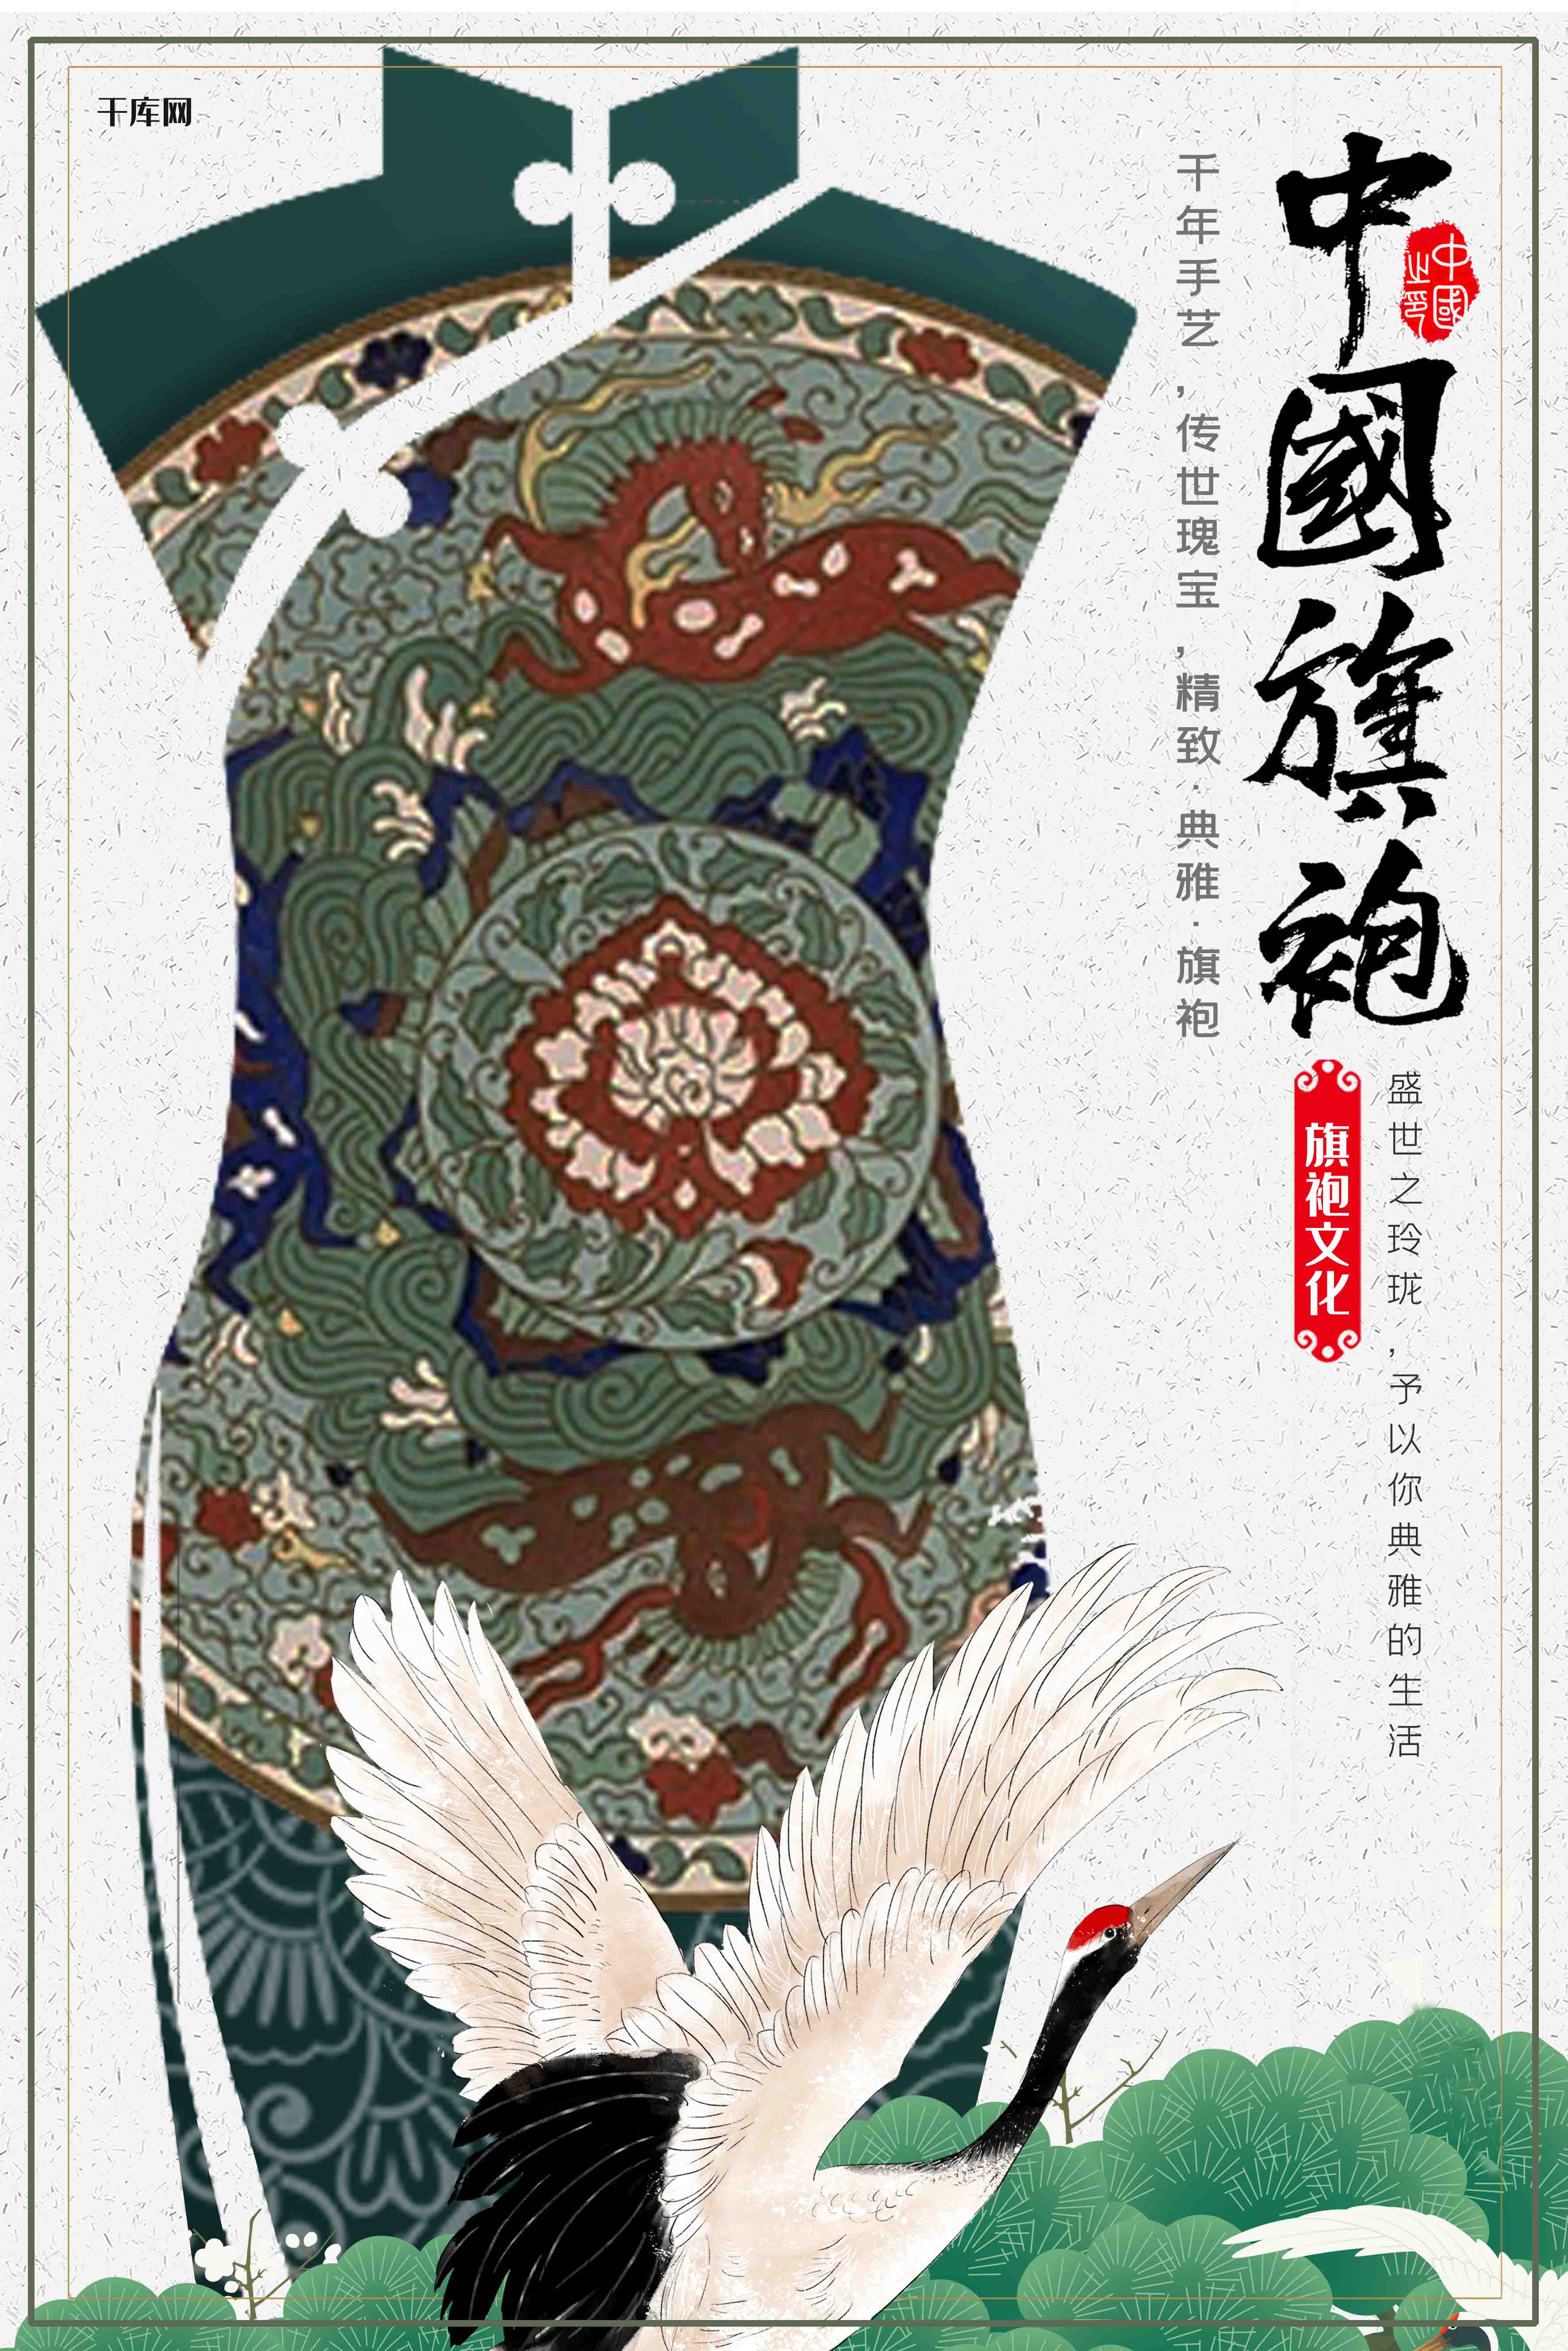 中国旗袍传统文化创意合成传统纹样宣传海报图片